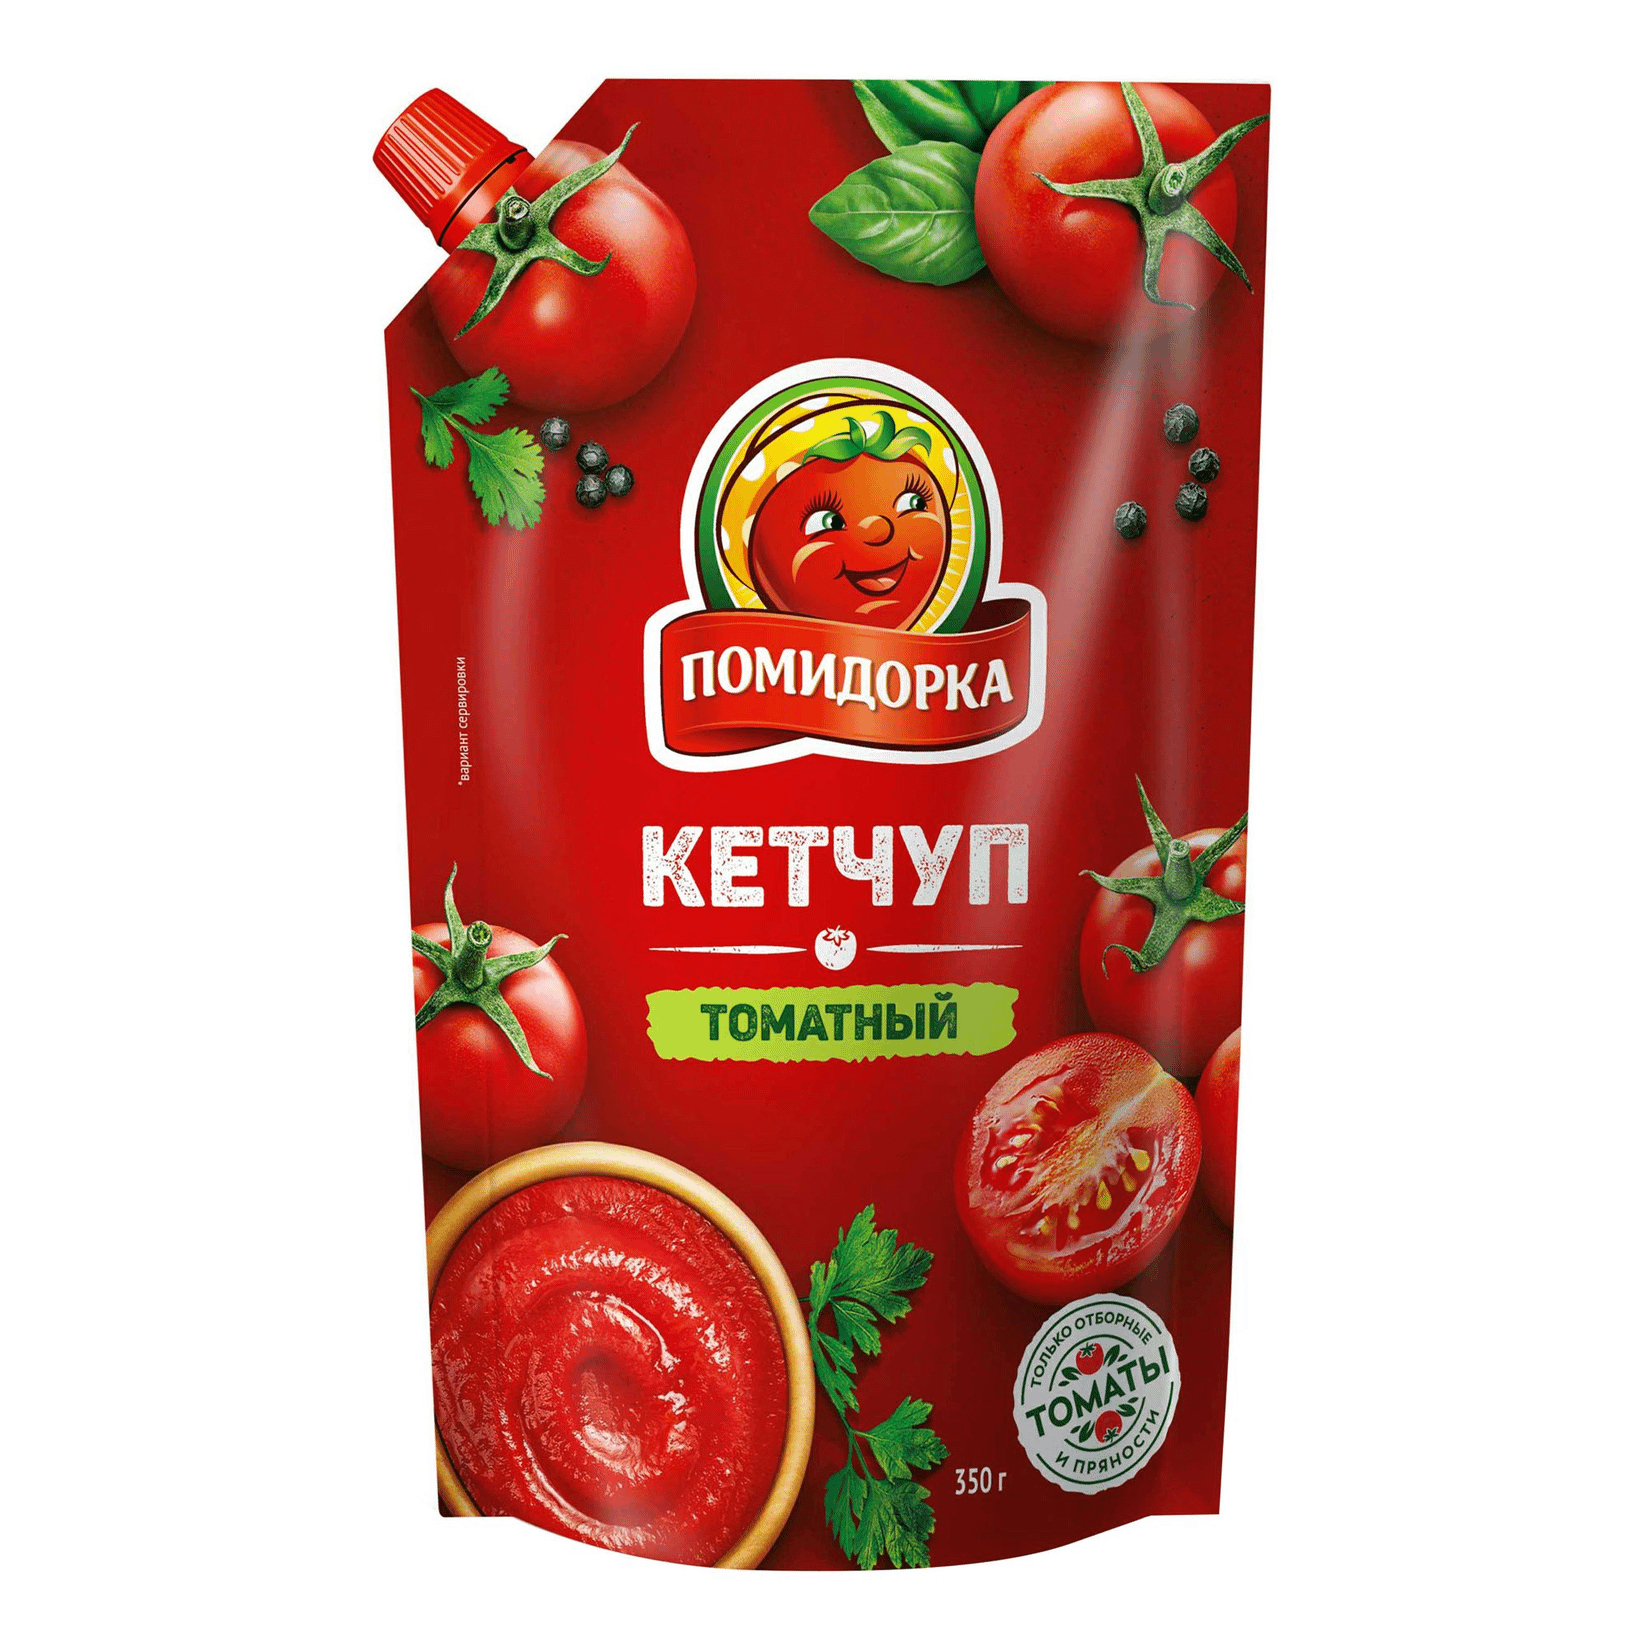 Кетчуп Помидорка Томатный 350 г кетчуп томатный помидорка 350 г